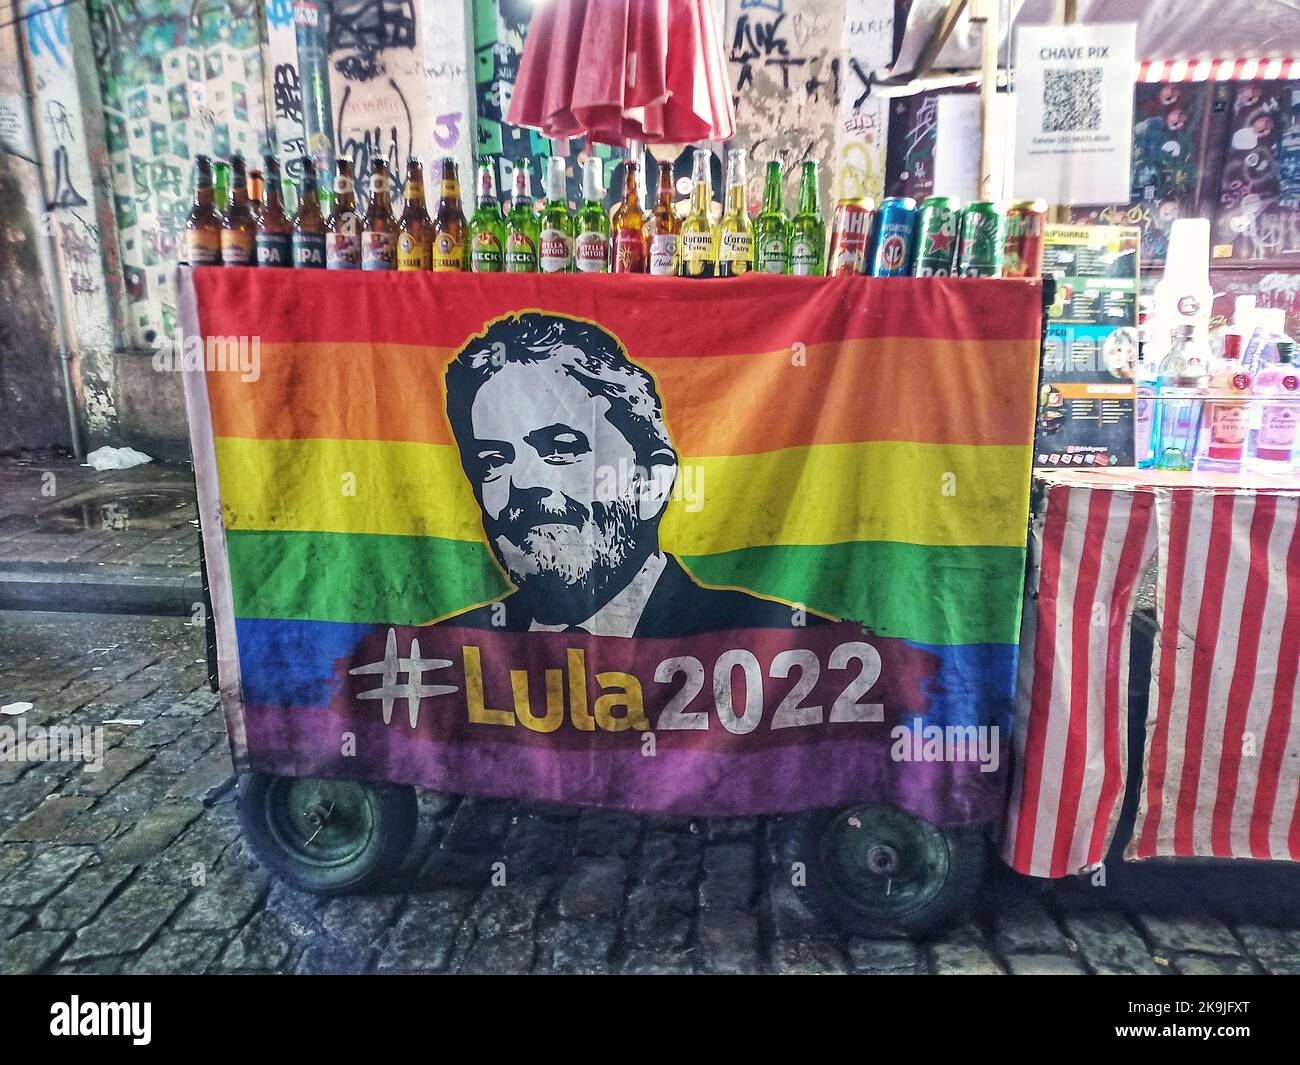 Brasilianischer Präsident Luiz Inacio Lula da Silva Plakat auf einer schwulen Flagge, Homosexuelle, die lula da silva für den Wahlkampf unterstützen, Wahlen in Brasilien 2022, lula Stockfoto